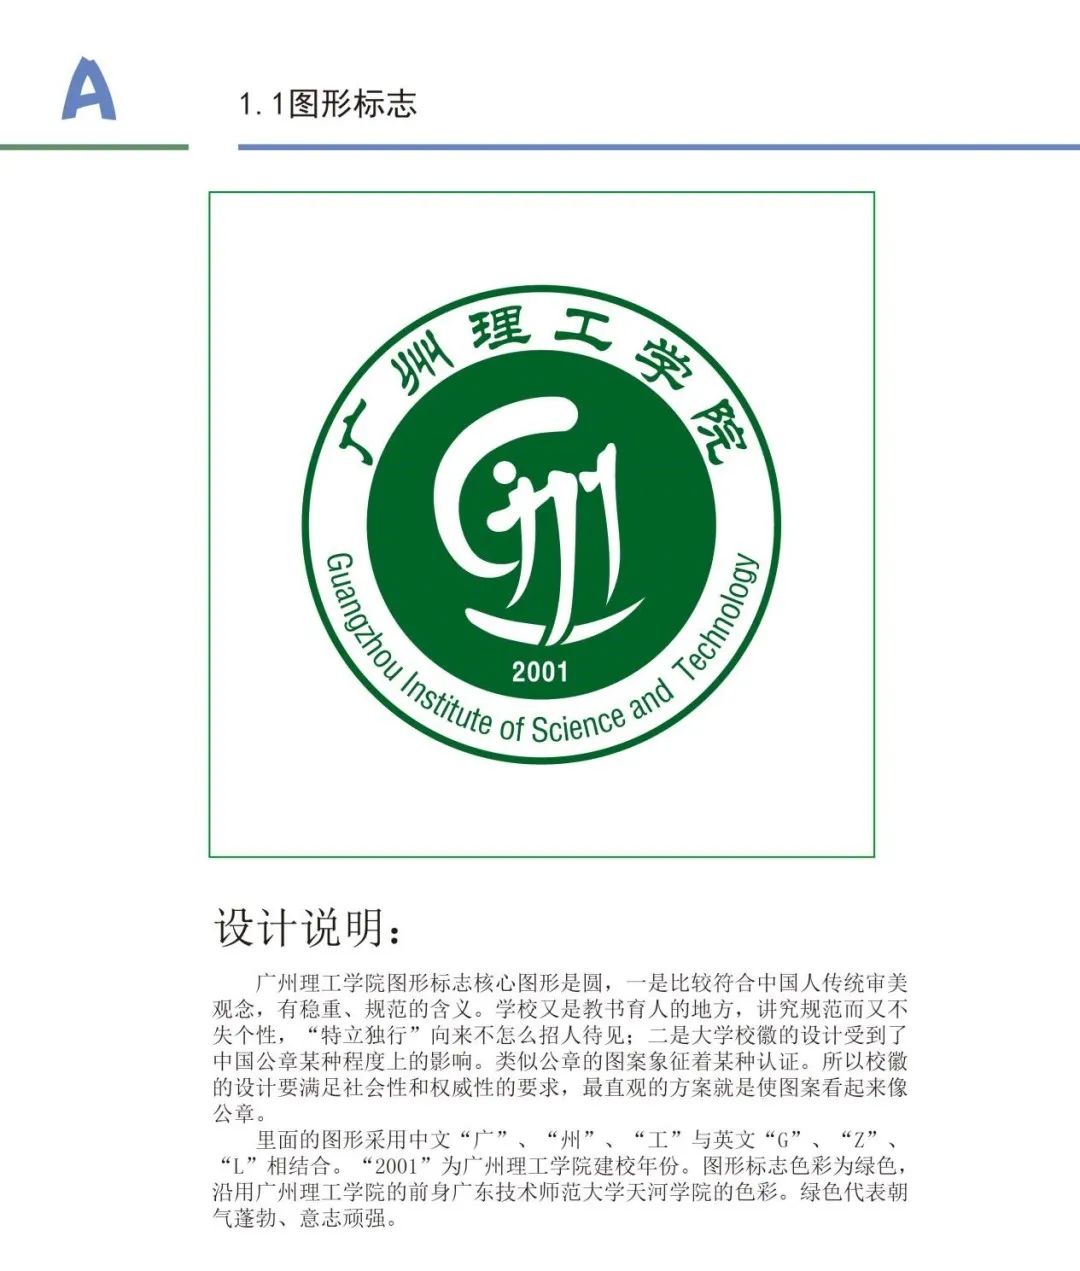 广州理工学院校徽logo征集第一轮初审结果出炉!